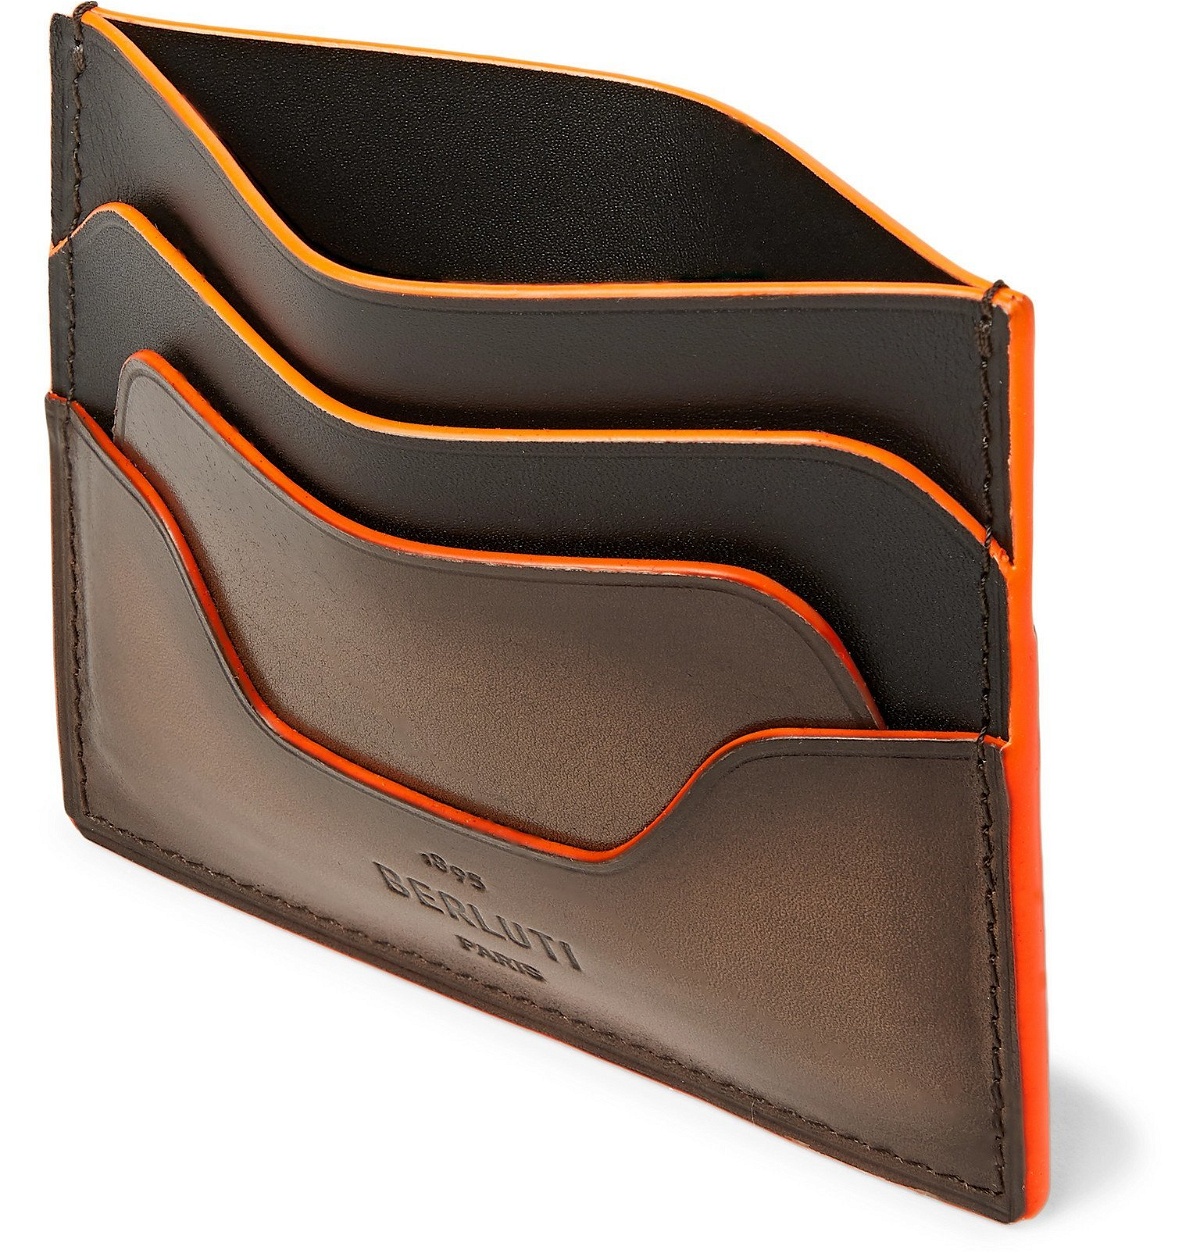 Berluti - Scritto Venezia Leather Cardholder - Brown